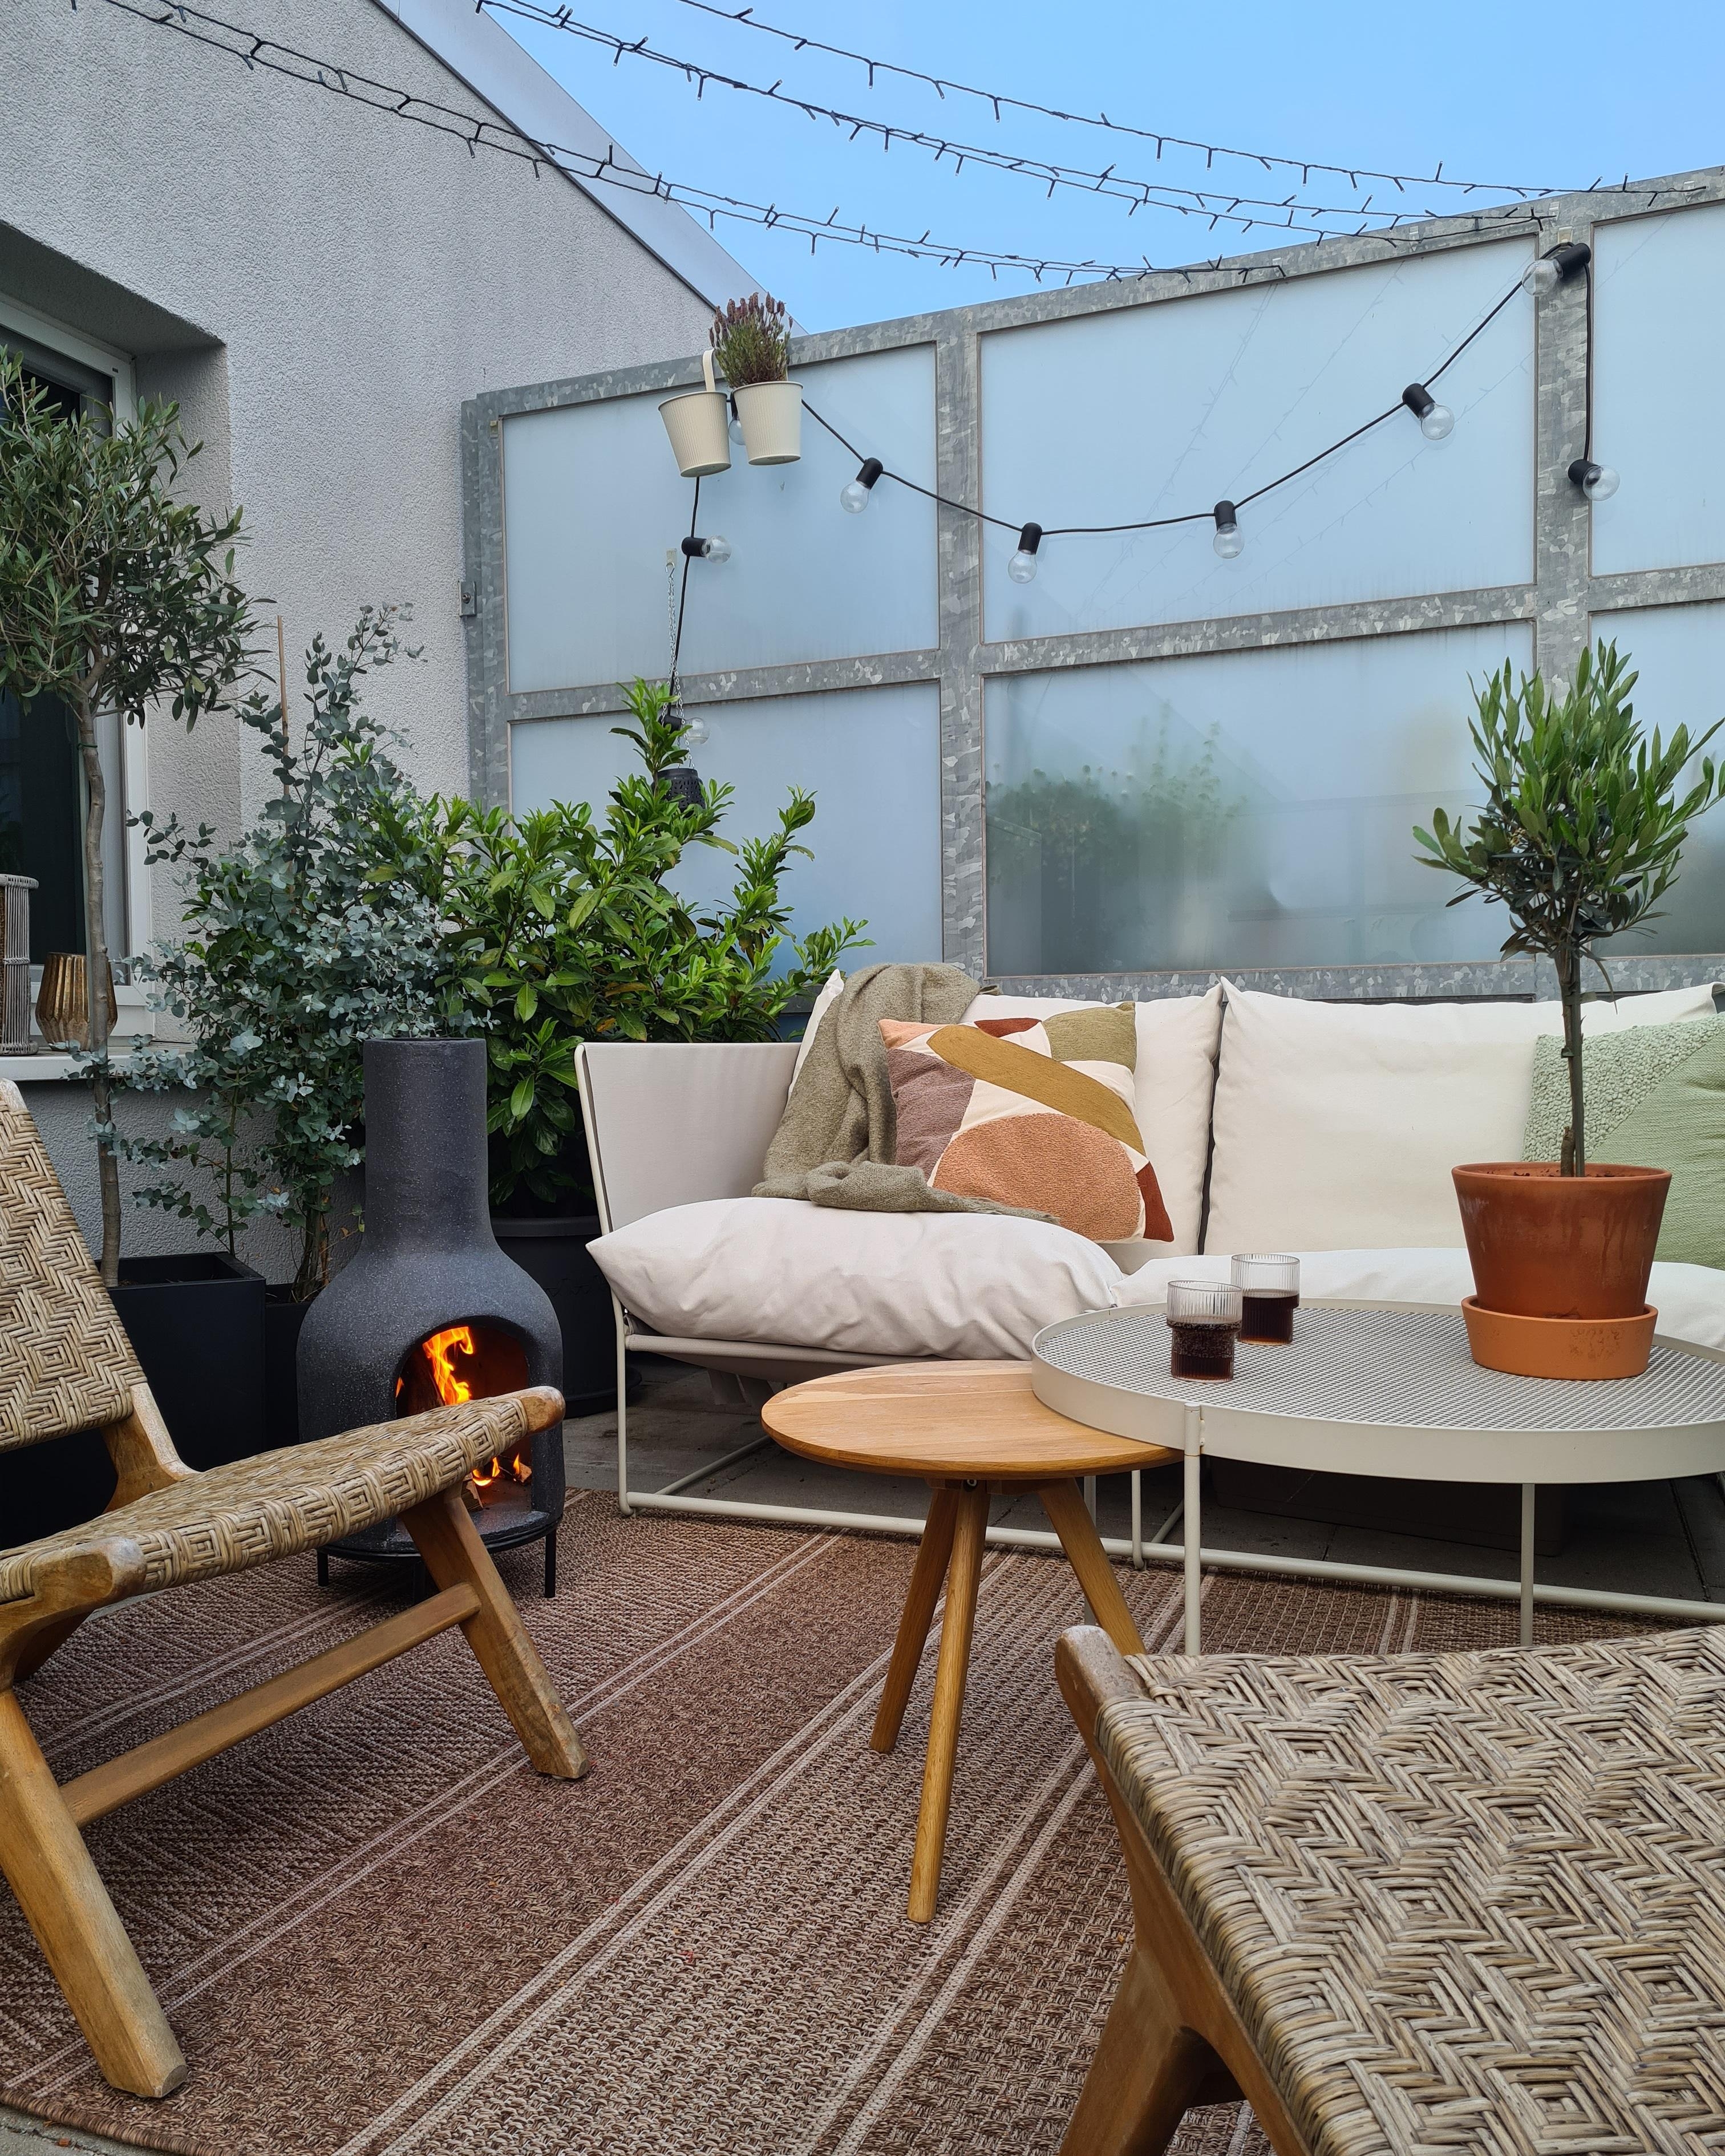 Terrasenupdate

#outdoor #kamin #ofen #myoutdoorlivingroom #terrasse